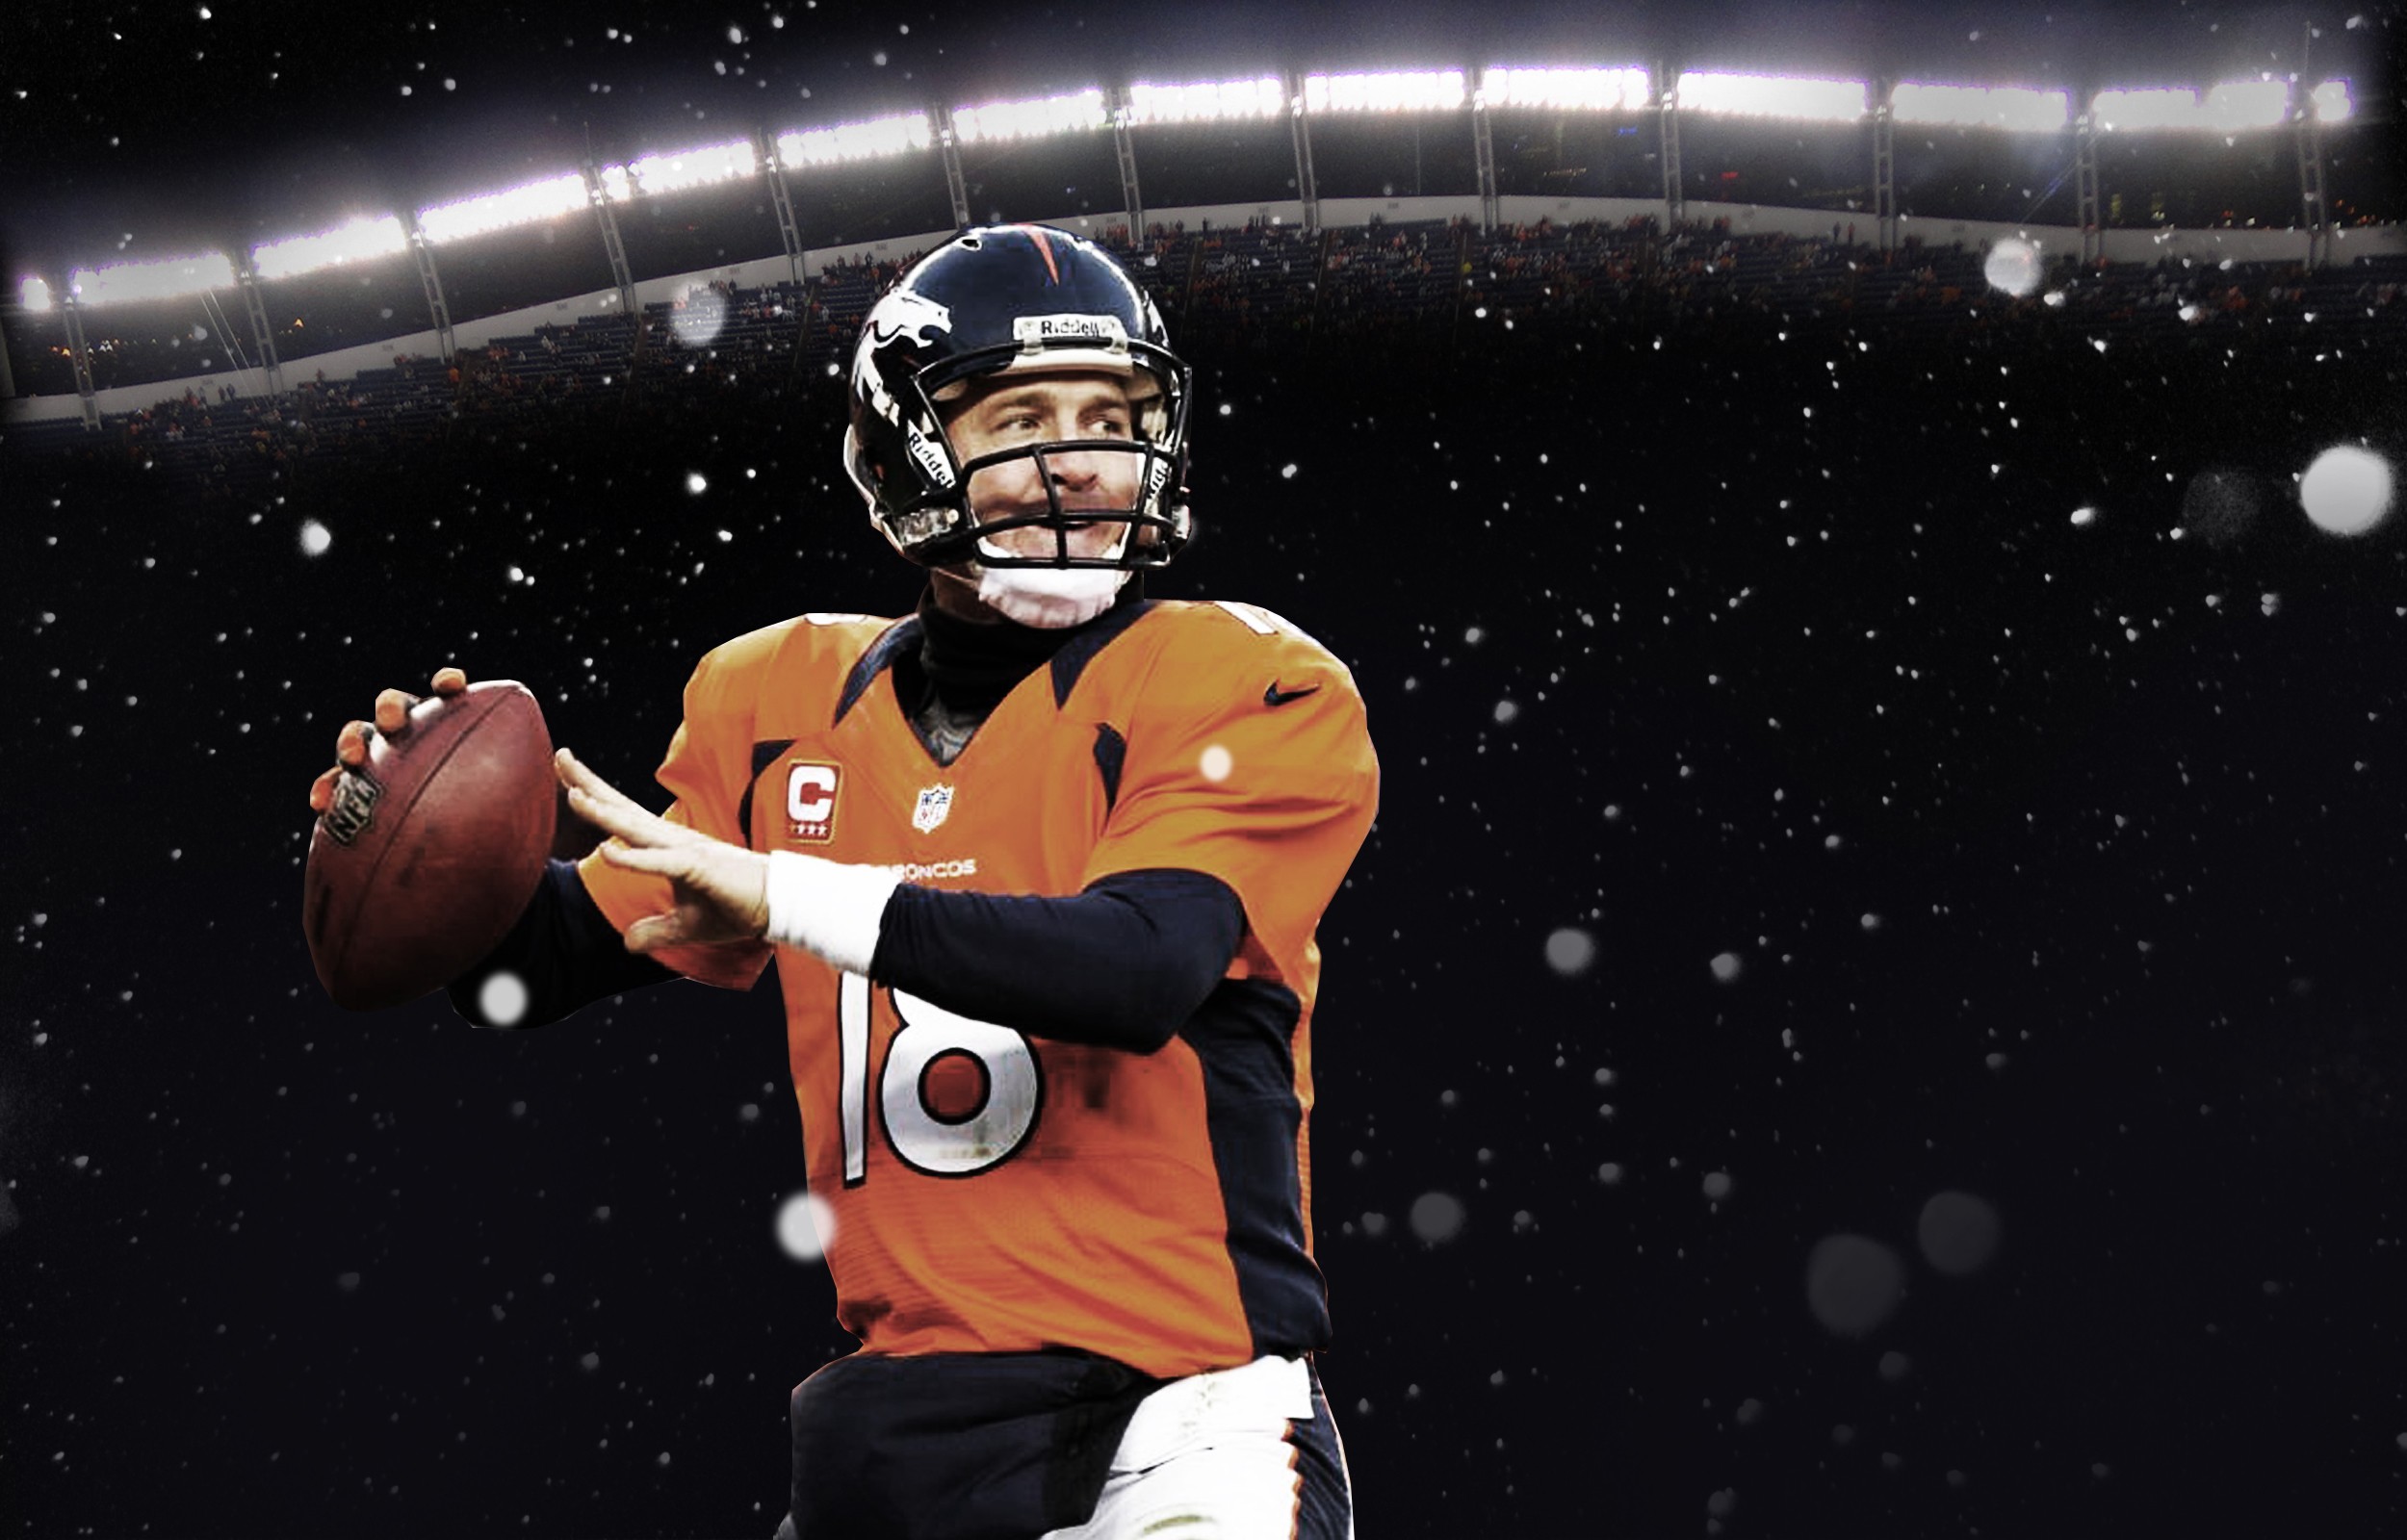 Peyton Manning Desktop Wallpaper New HD